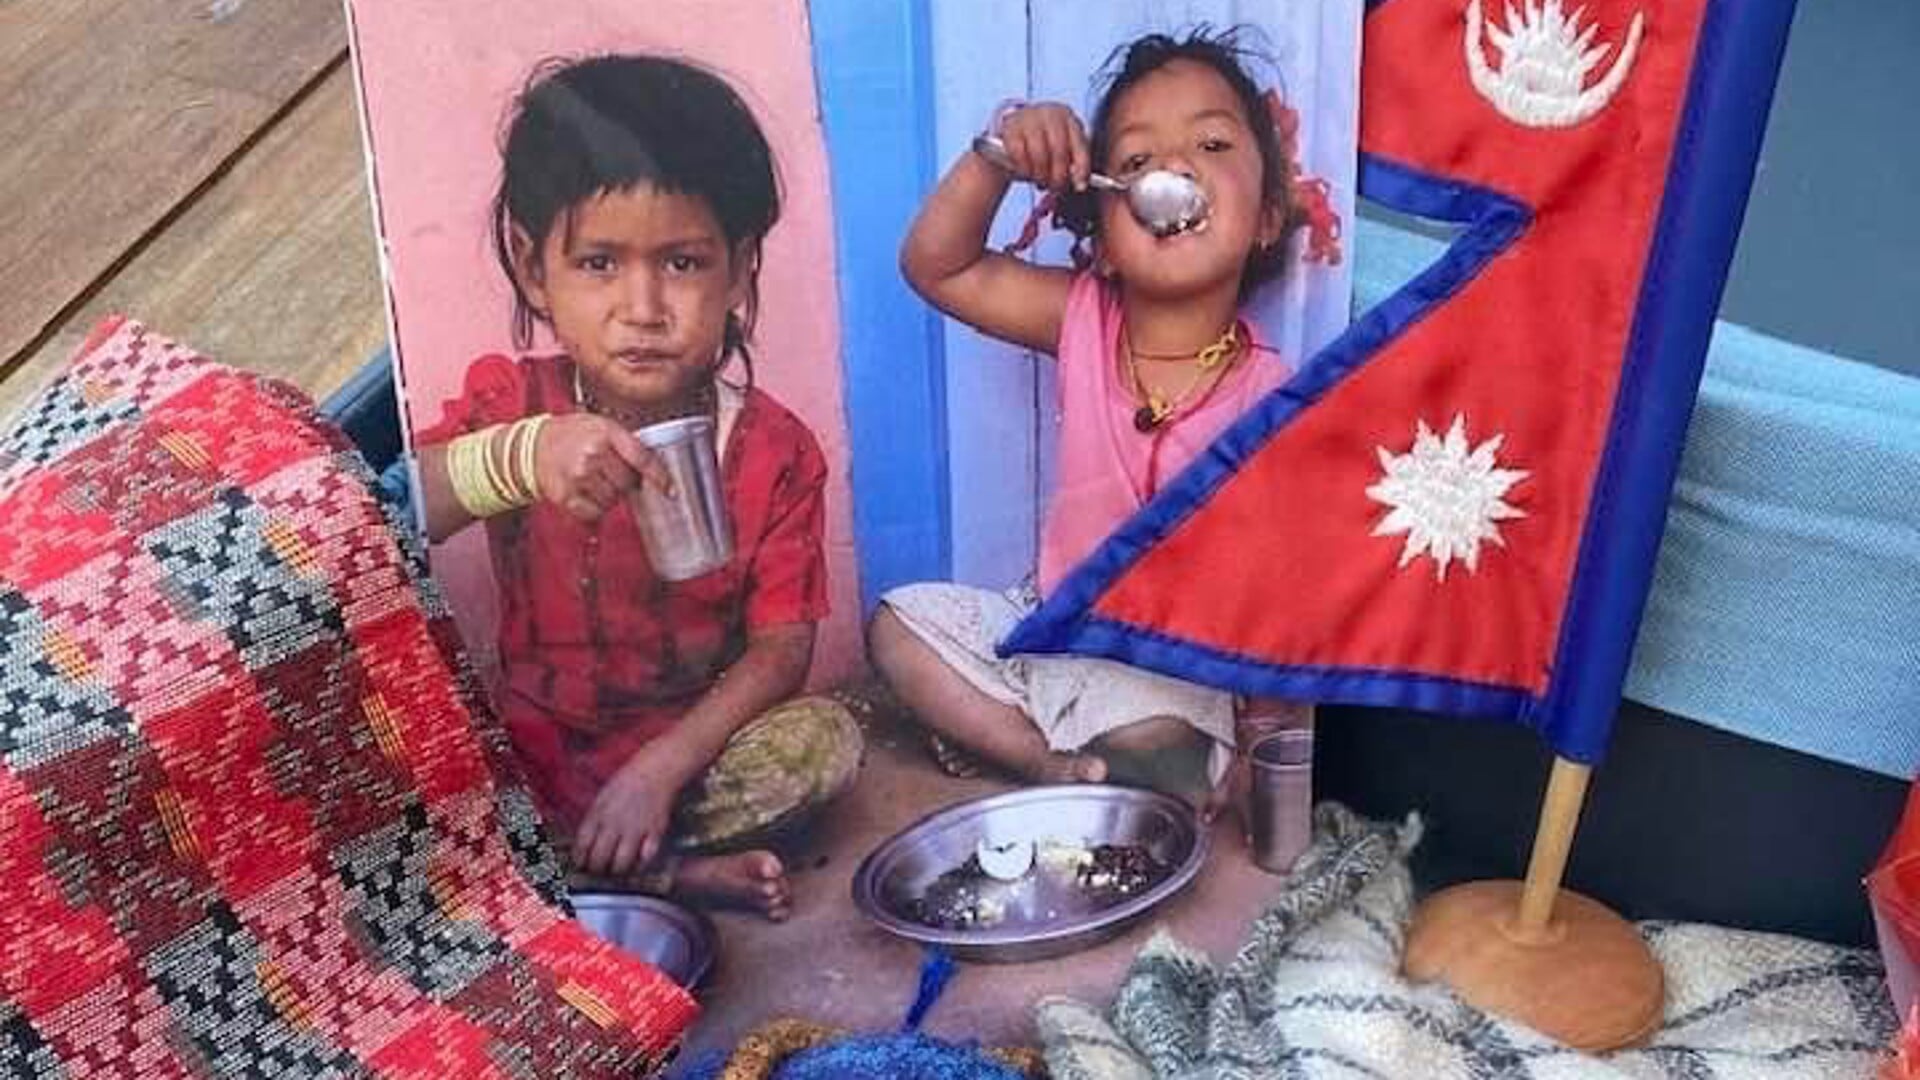 Maak jij het verschil in Nepal?